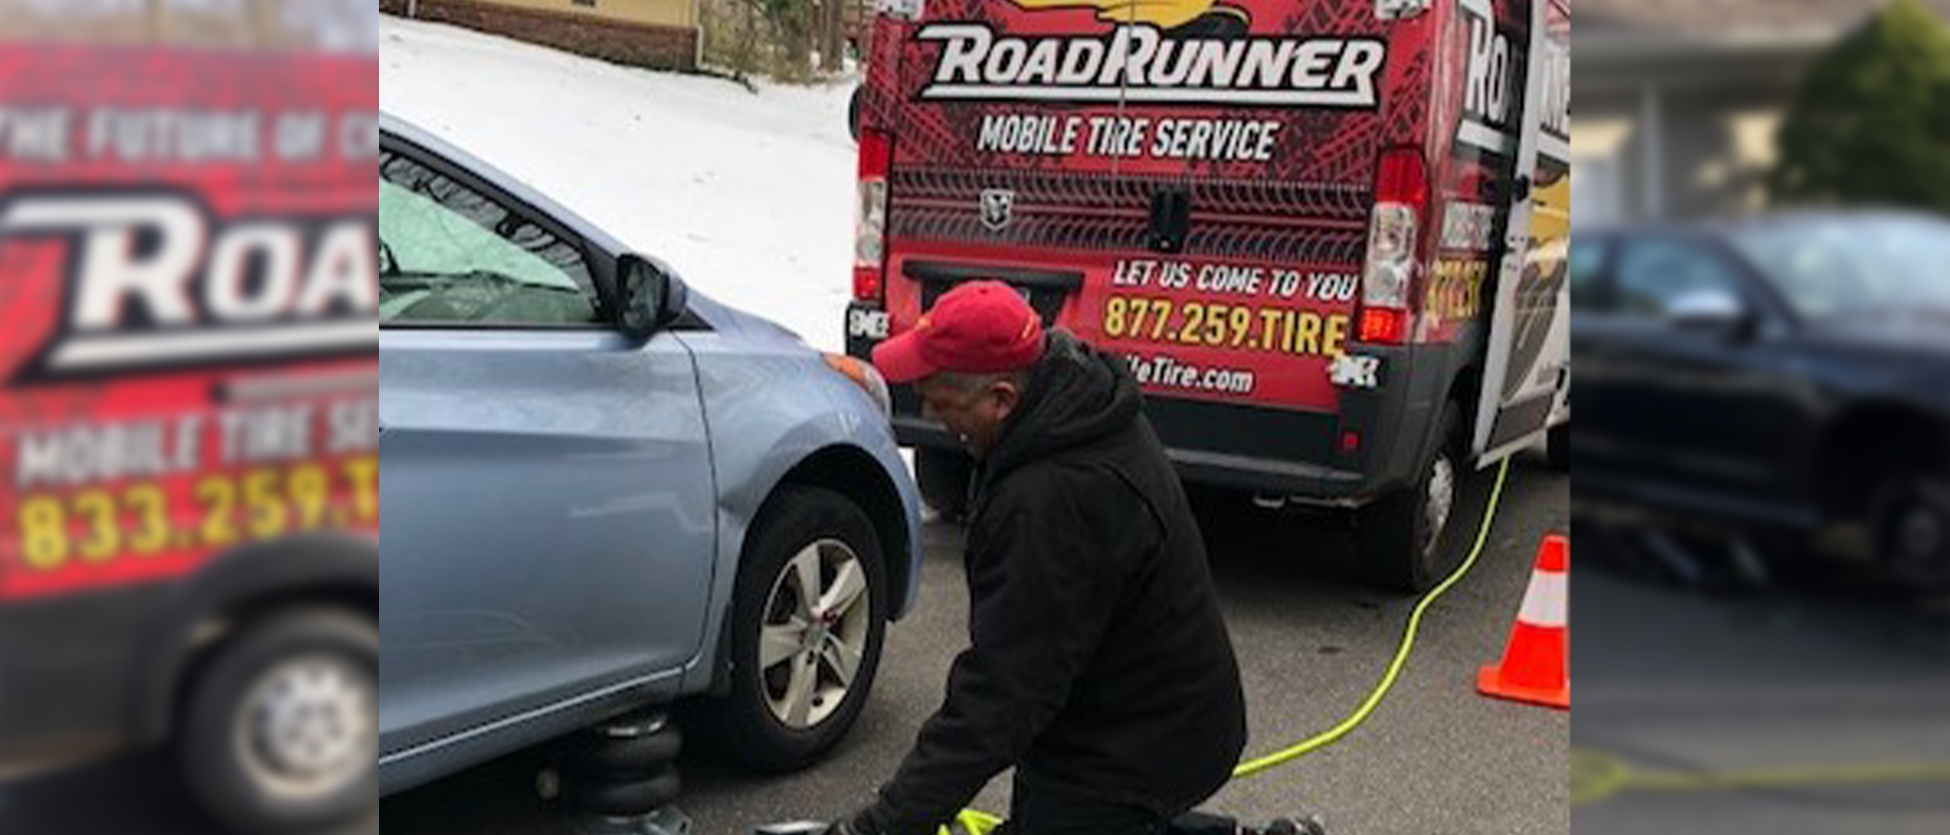 Road Runner Mobile Tire Service | Ridgefield, CT Mobile Repair & Tires